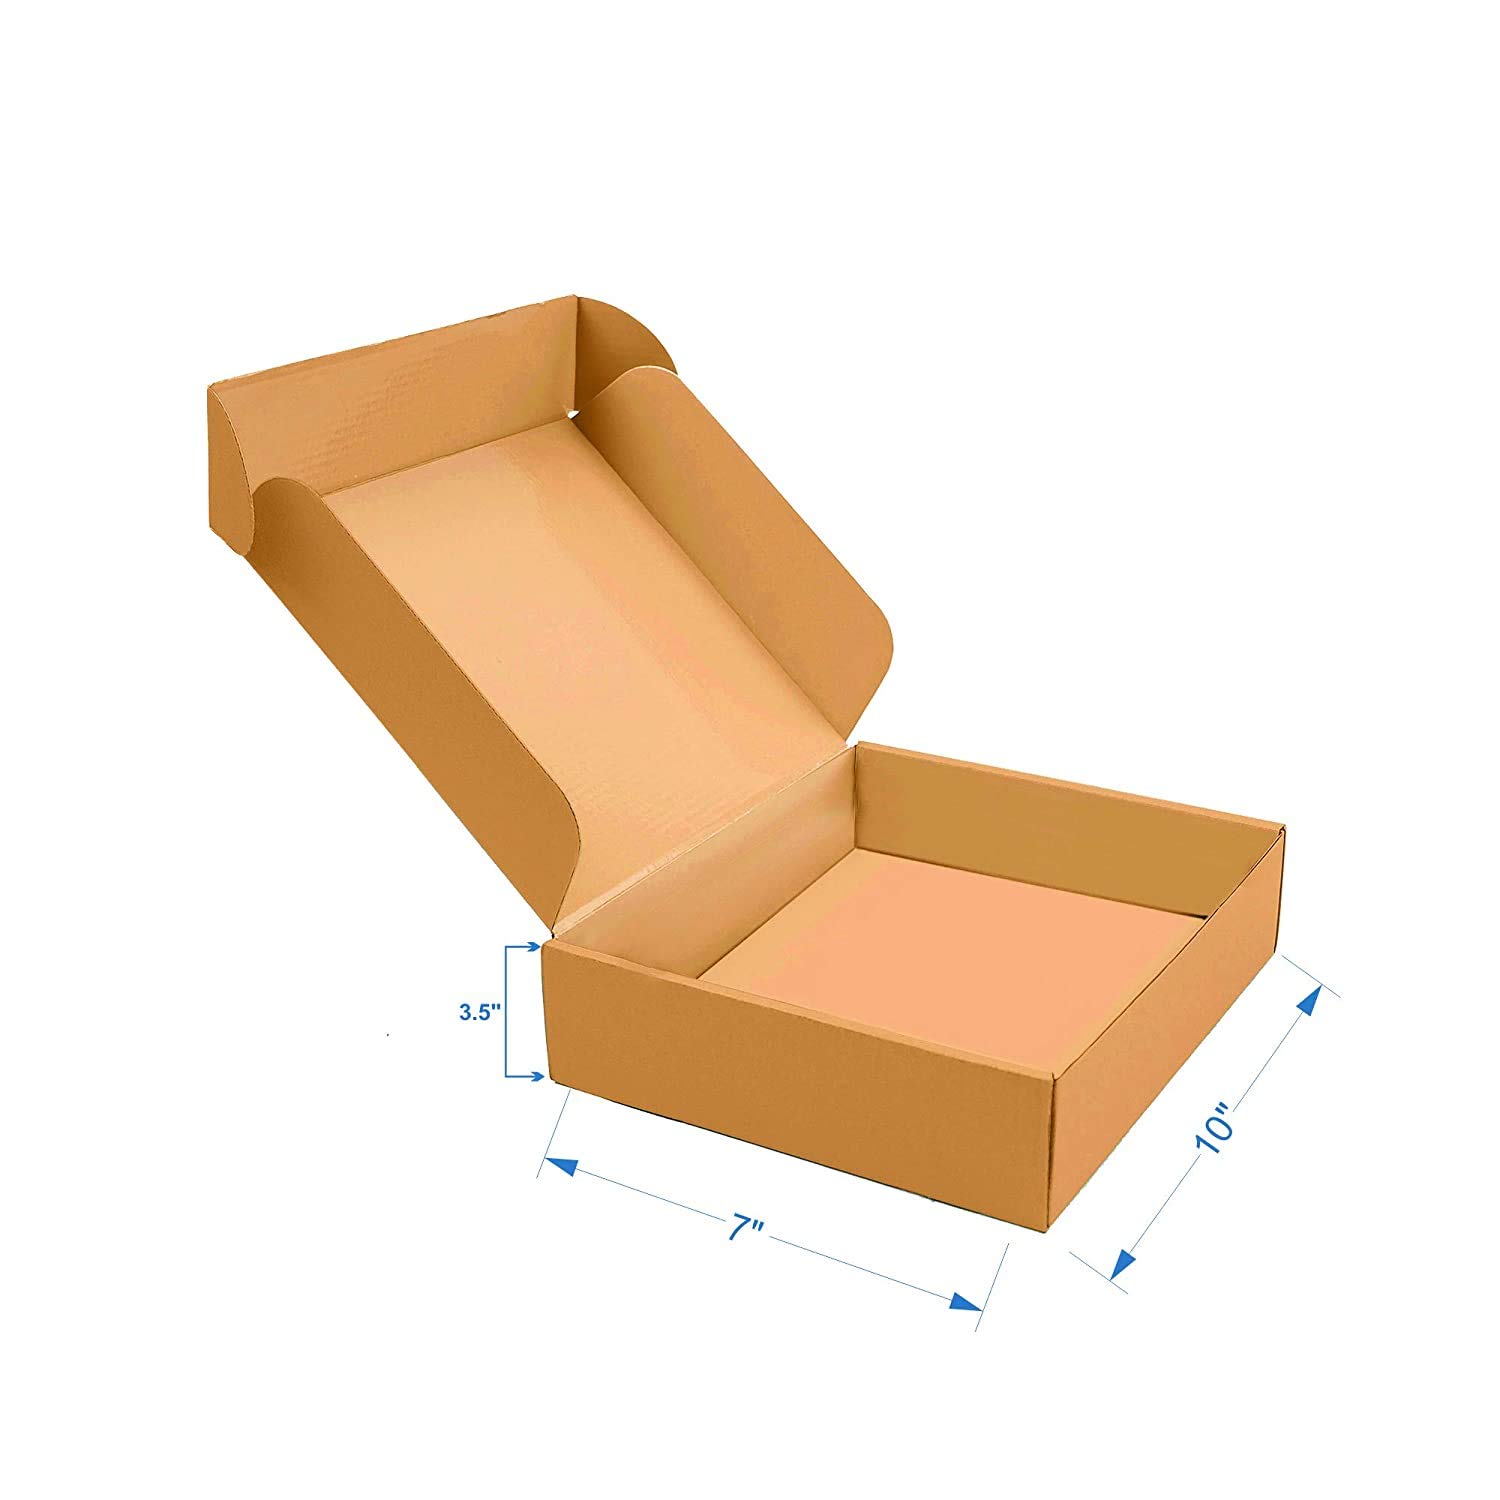 corrugated box,3 ply corrugated box,packing corrugated box, packaging corrugated box,pizza size corrugated box,small corrugated box,carton box,3 ply carton box,packing carton box, packaging carton box,pizza size carton box,small carton box,box,3 ply box,packing box, packaging box,pizza size box,small box